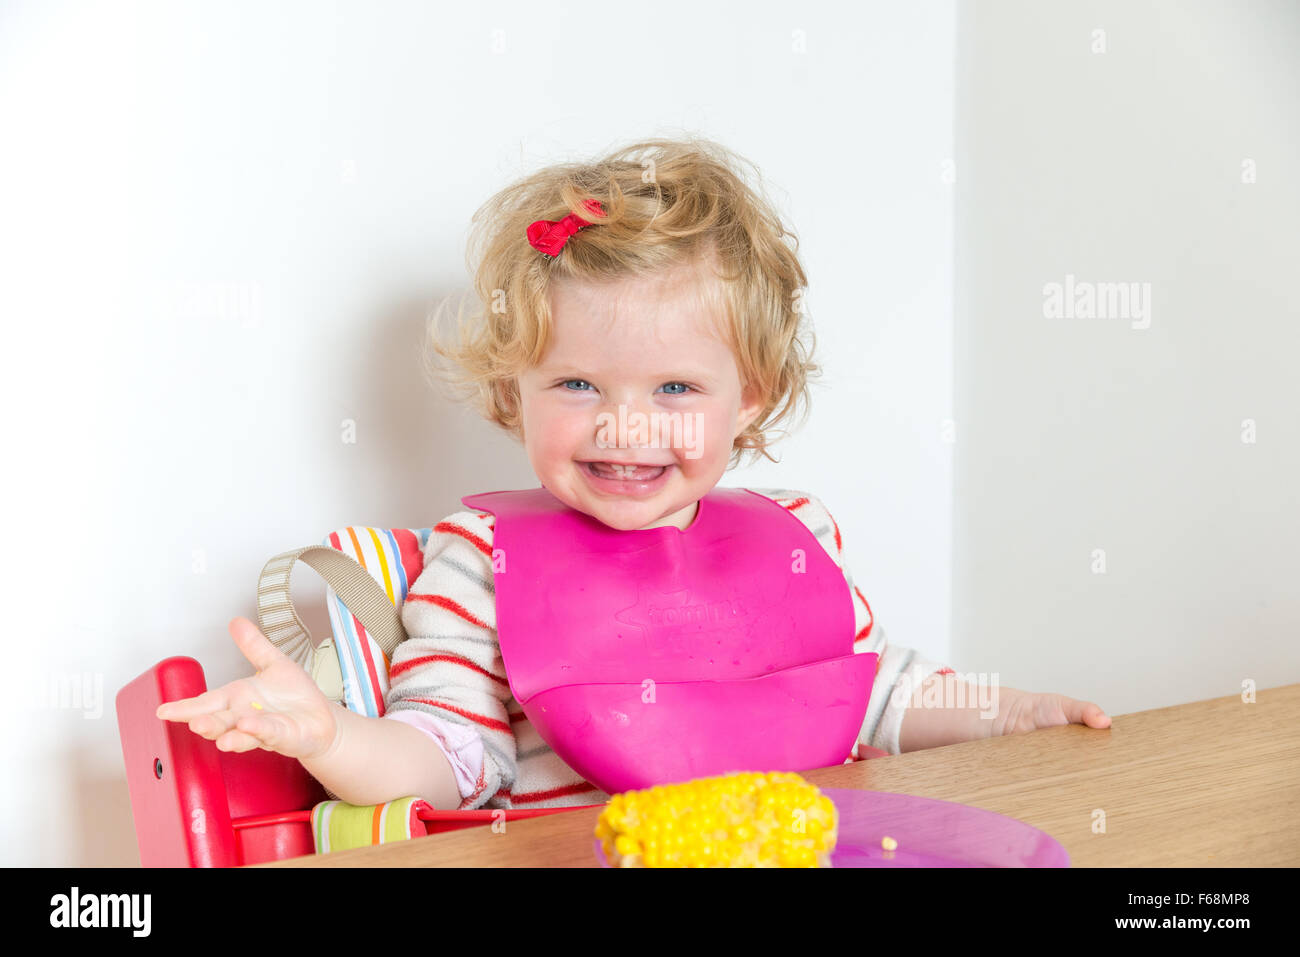 1 Jahr altes Baby lächelnd an den Esstisch, England, UK Stockfoto